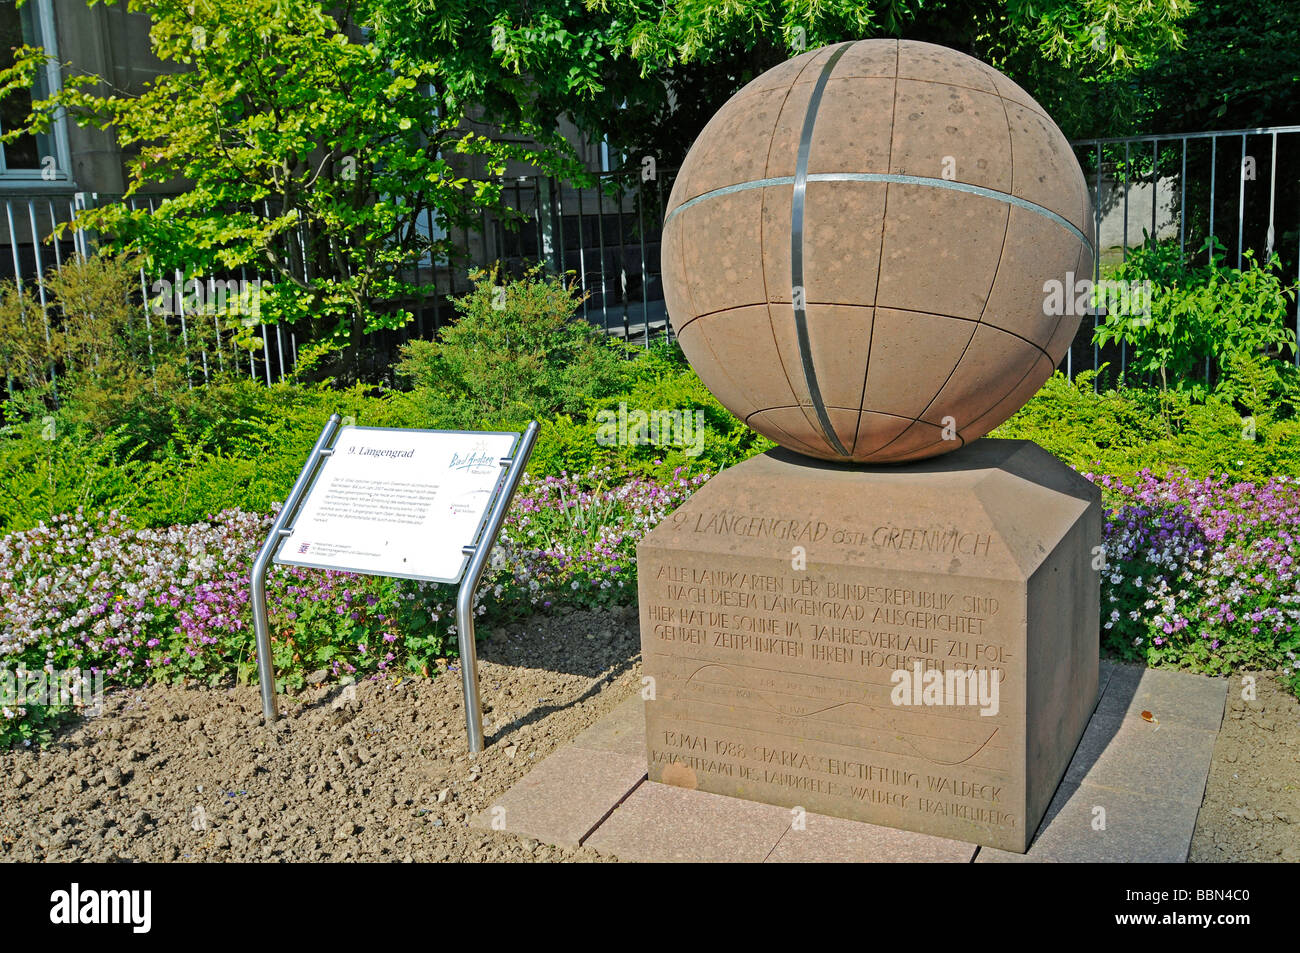 Noveno, la longitud del meridiano de Greenwich, el globo, monumento, marcador, Meridian, Bad Arolsen, Hesse, Alemania, Europa Foto de stock